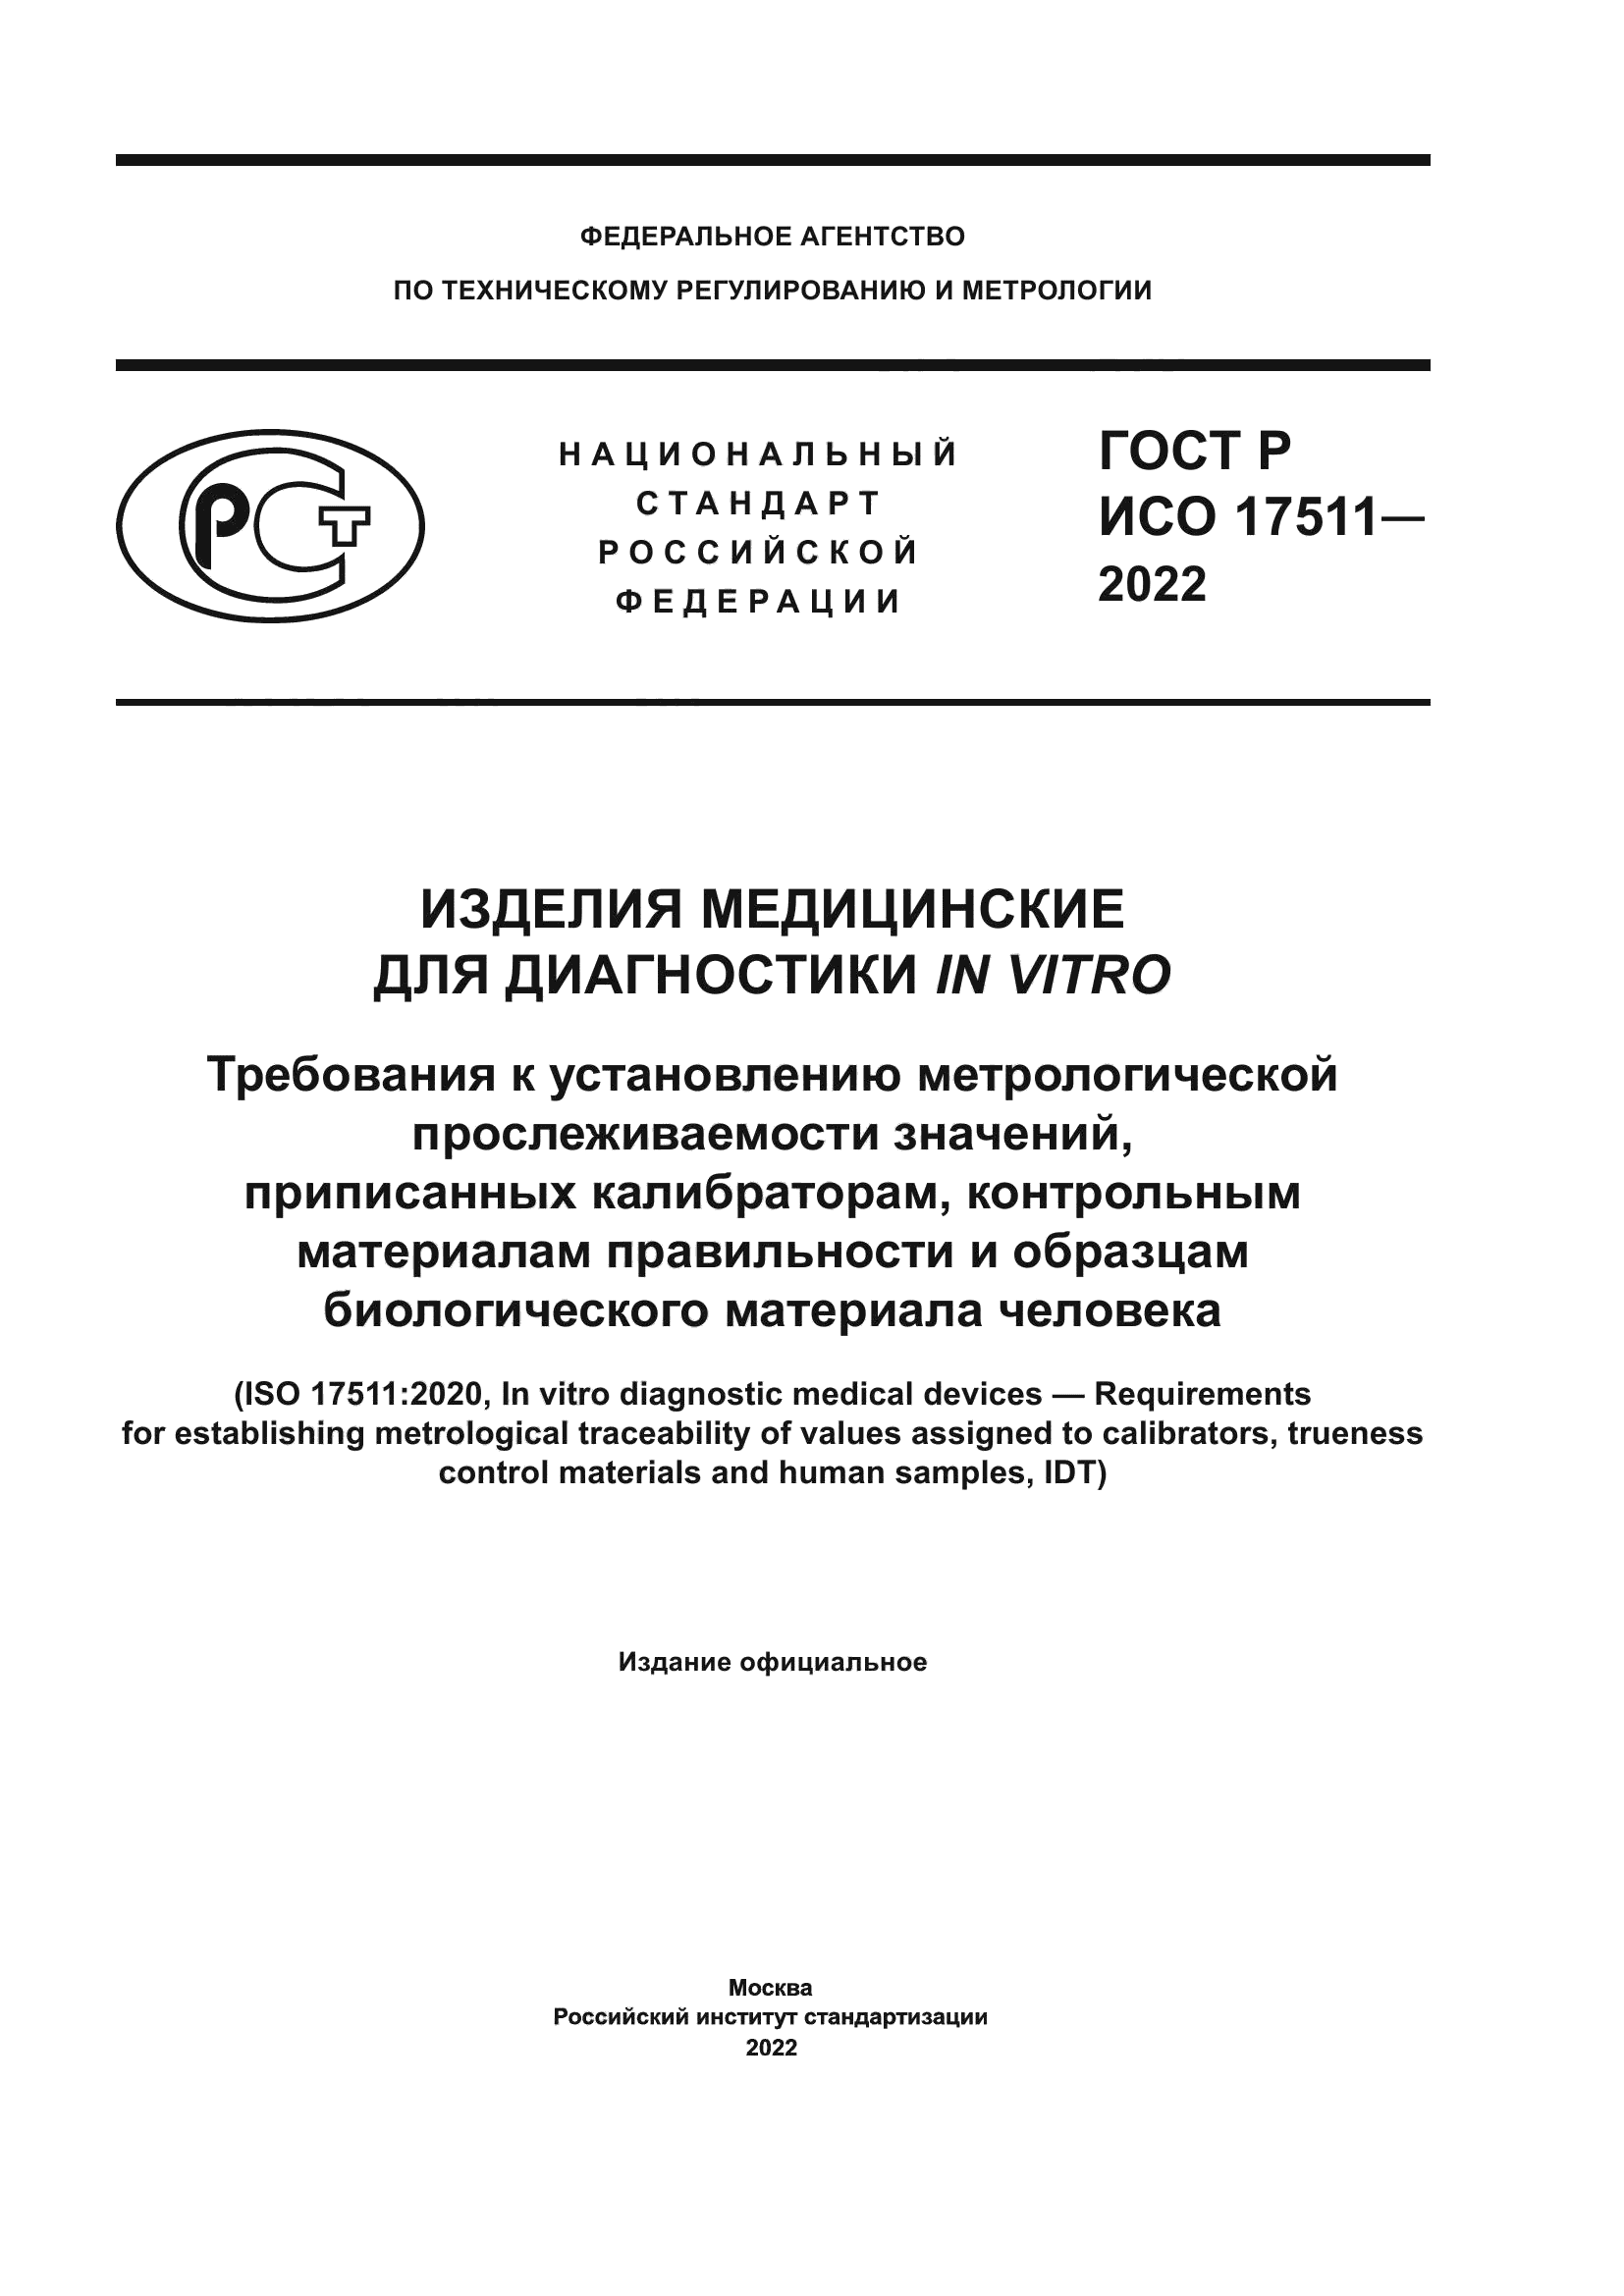 ГОСТ Р ИСО 17511-2022